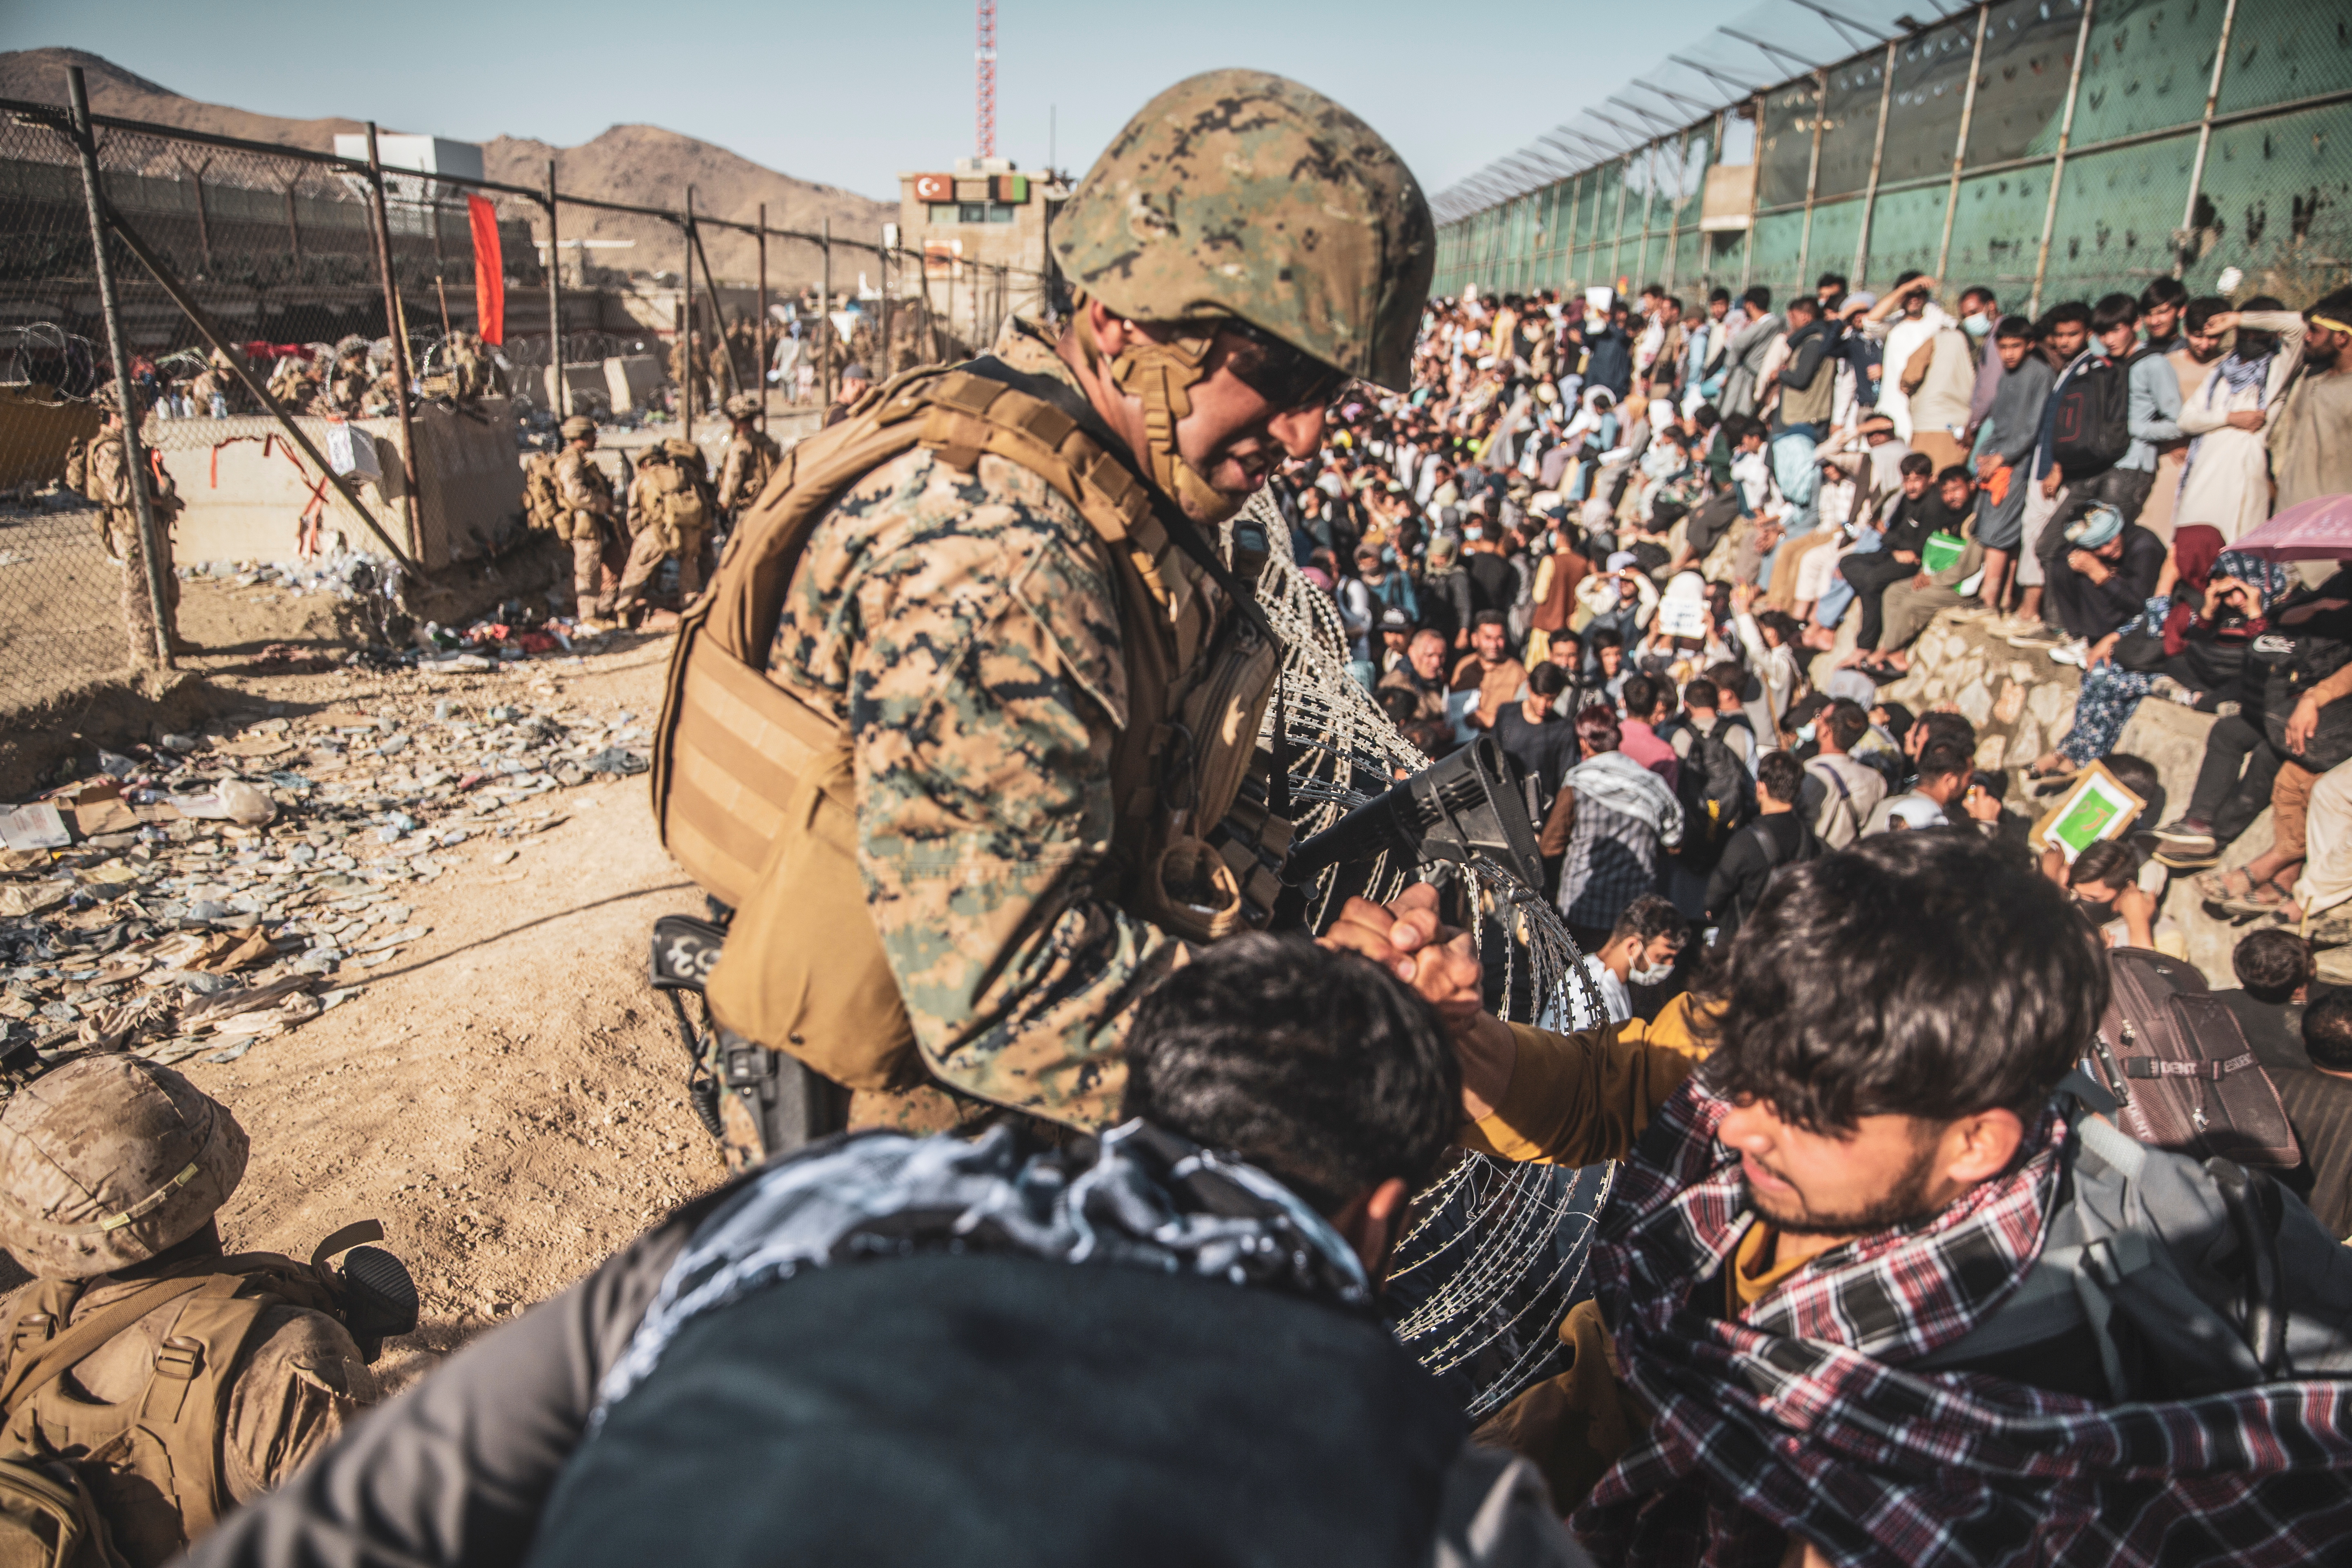 Un marine estadounidense asiste en un punto de control de evacuación (ECC) durante una evacuación en el aeropuerto internacional Hamid Karzai, Kabul, Afganistán, 26 de agosto de 2021 (Reuters)